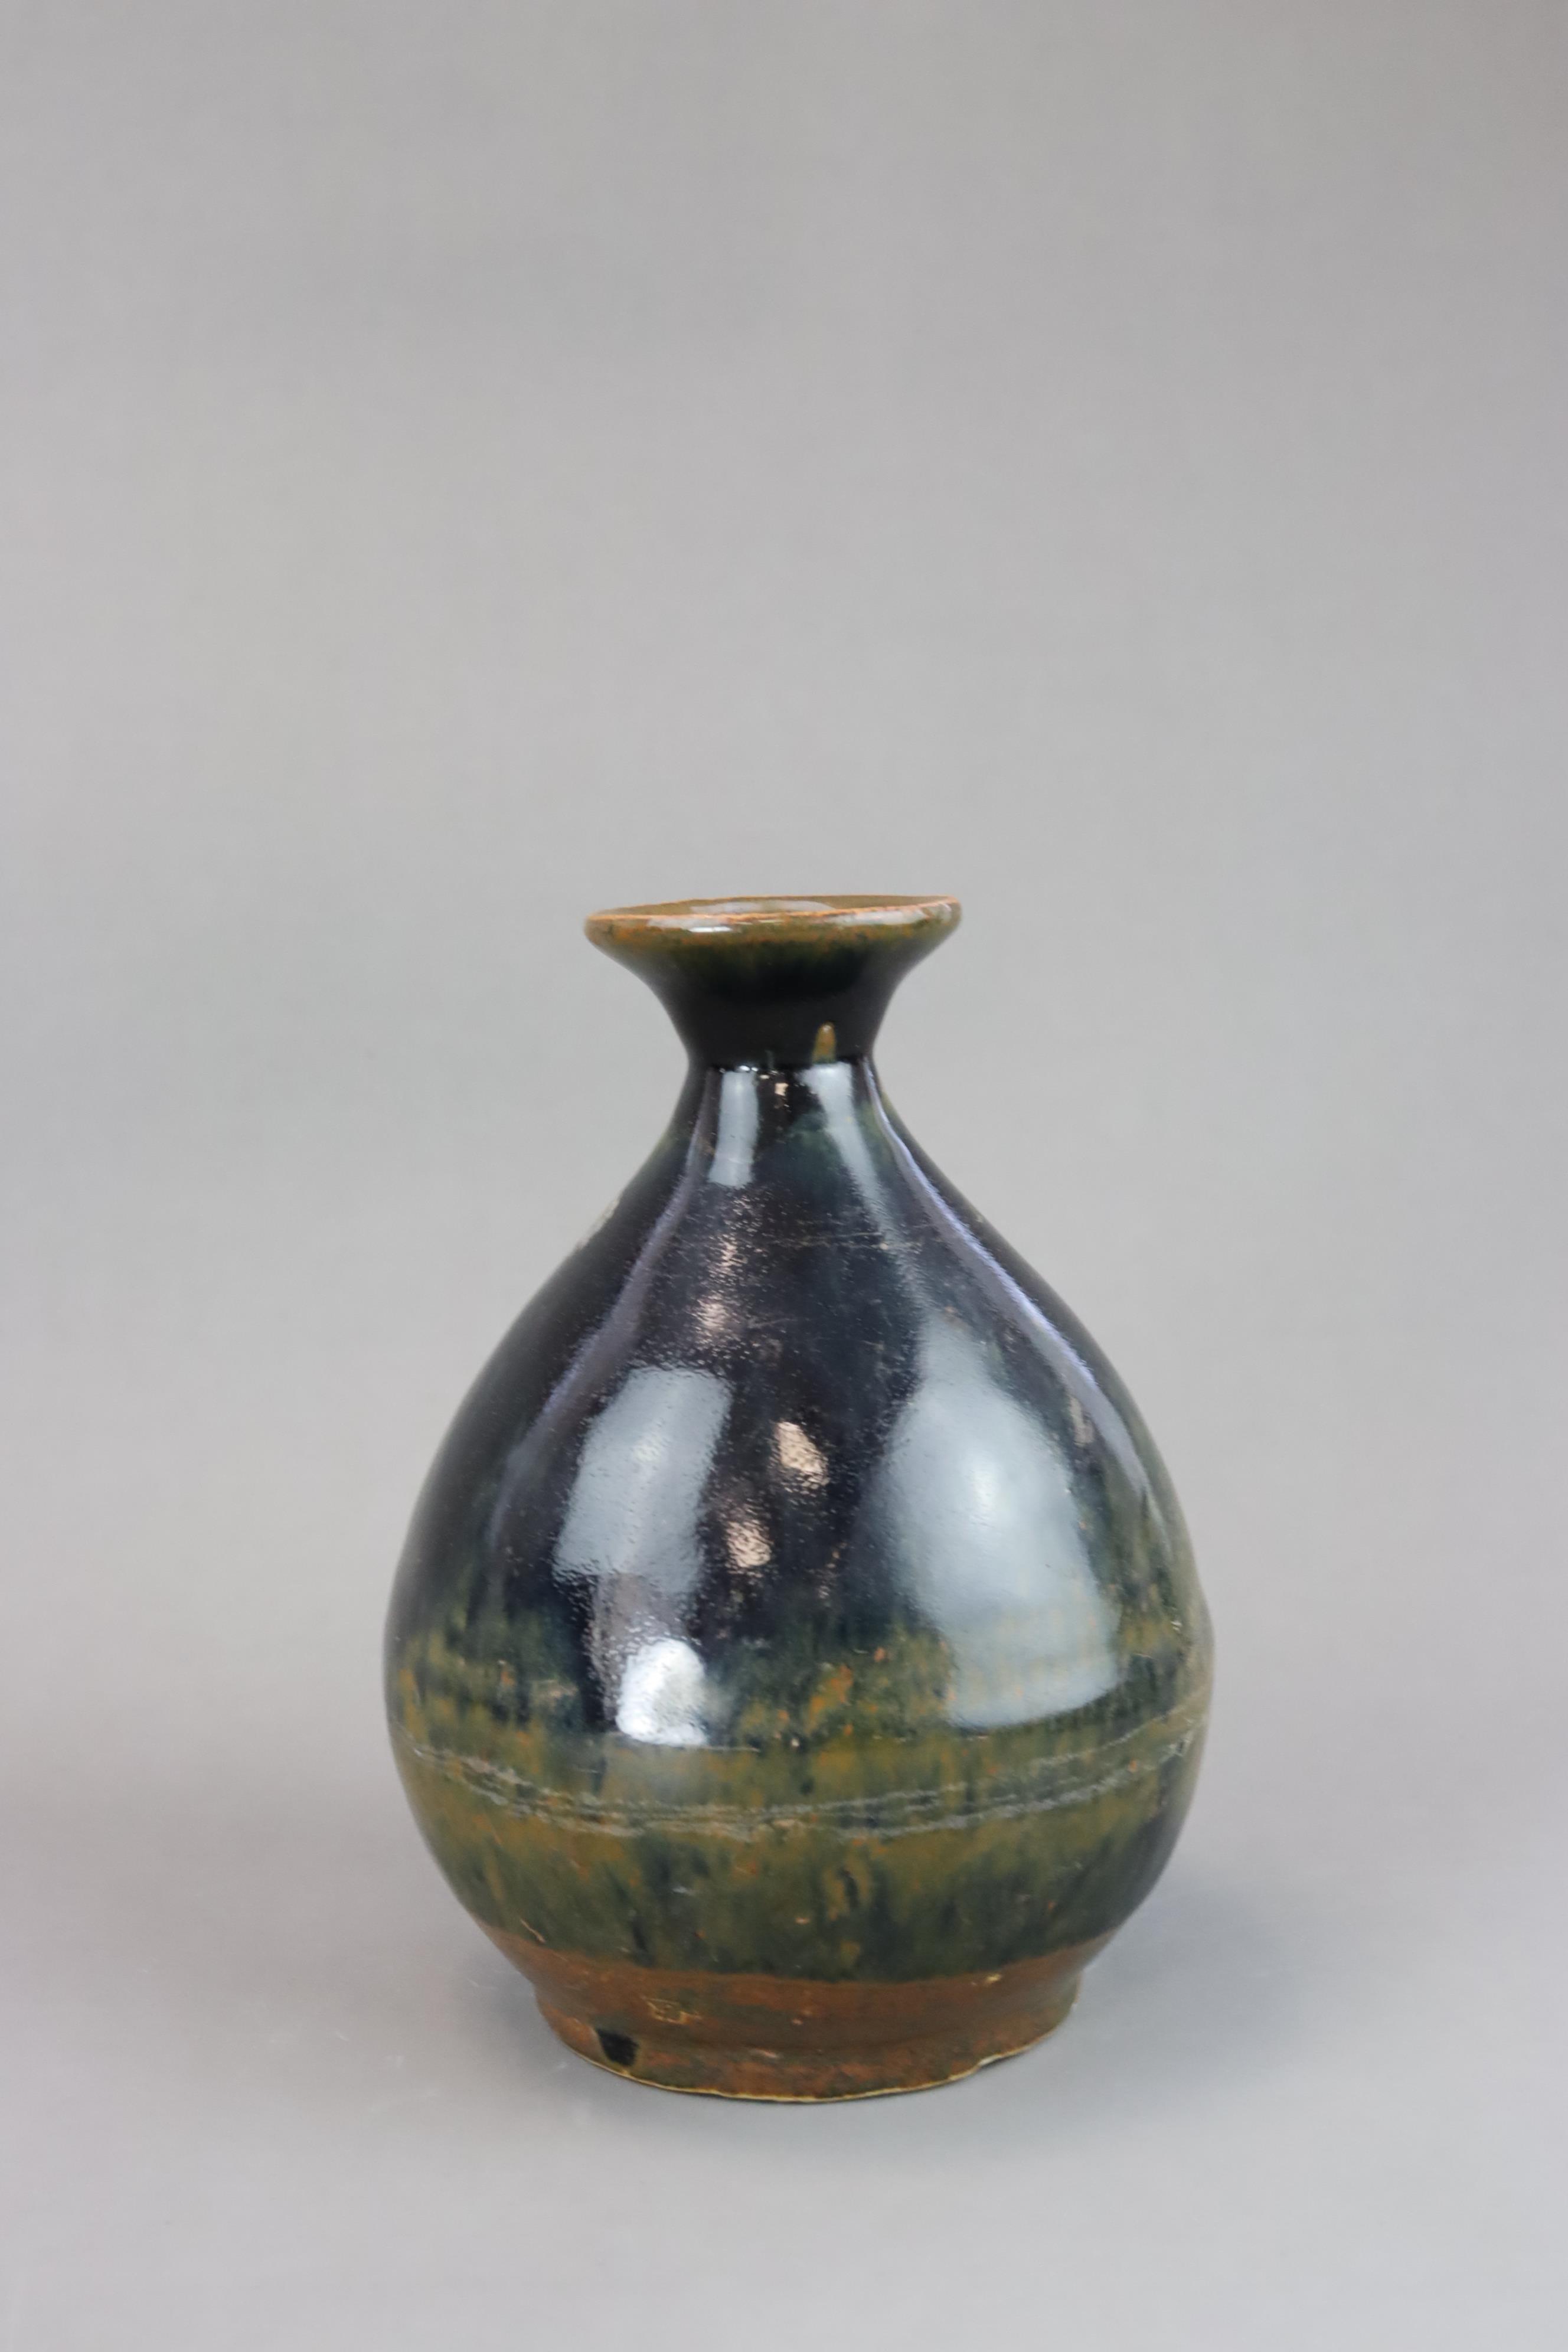 A Black glazed Stoneware Vase, yuhuqunping, Ming dynasty - Image 3 of 6